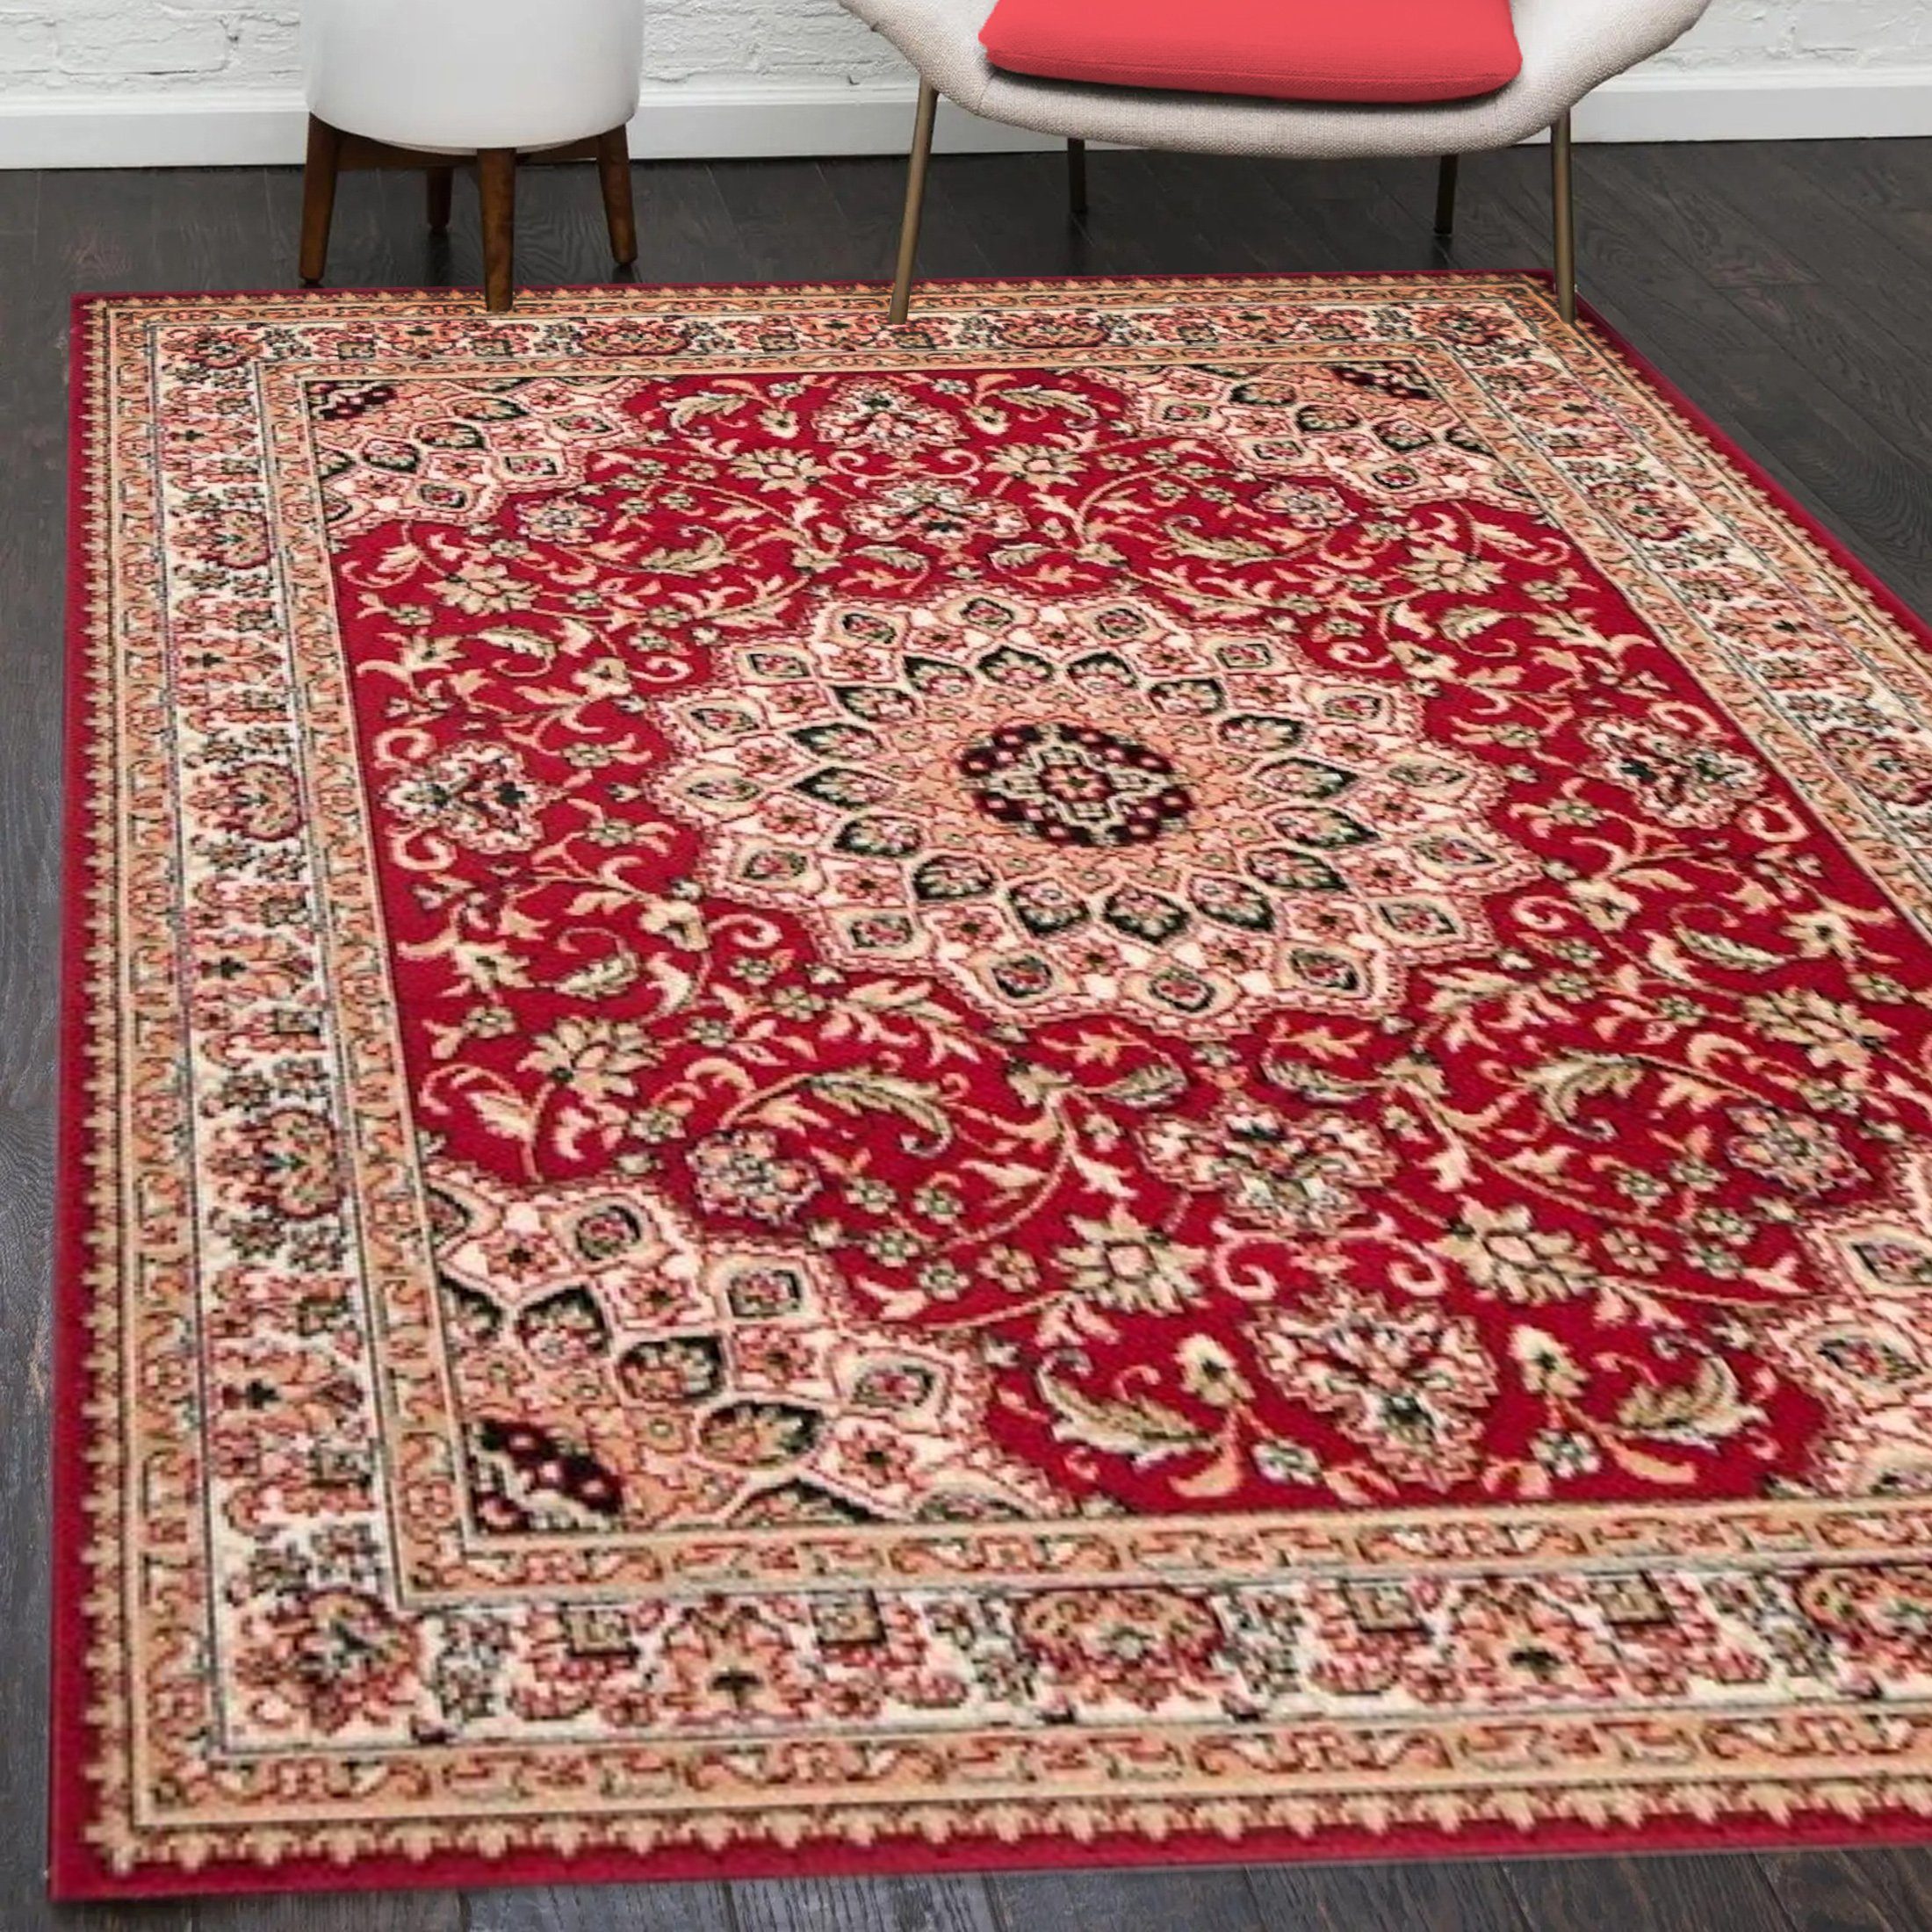 Orientteppich Orientalisch Vintage Teppich Kurzflor Wohnzimmerteppich Rot, Mazovia, 60 x 100 cm, Fußbodenheizung, Allergiker geeignet, Farbecht, Pflegeleicht Rot / F740A-RED